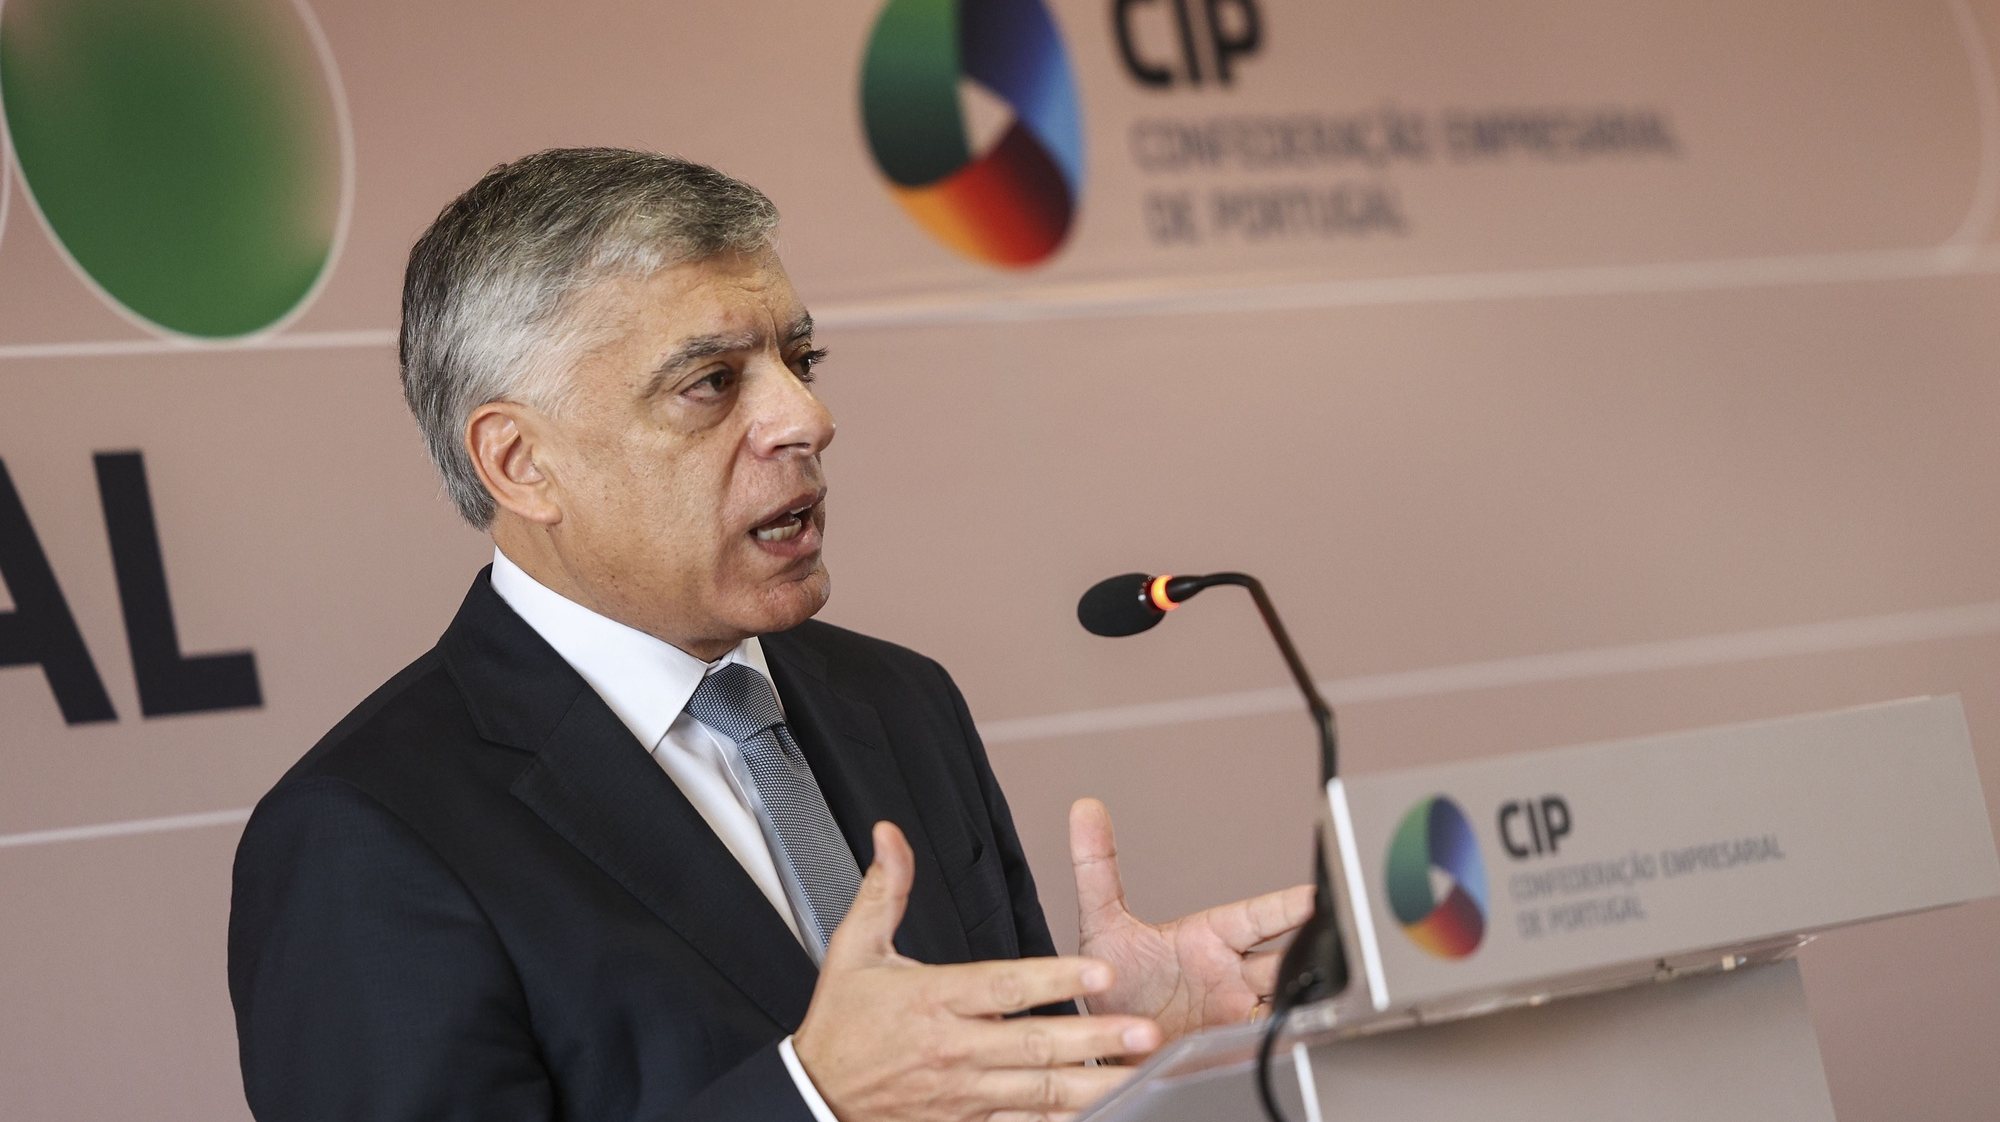 O presidente da CIP - Confederação Empresarial de Portugal, Armindo Monteiro, durante a conferência de imprensa onde aborda o Pacto Social, o Orçamento do Estado e as perspetivas económicas para 2024, esta manhã em Lisboa, 17 de outubro de 2023. MIGUEL A. LOPES/LUSA